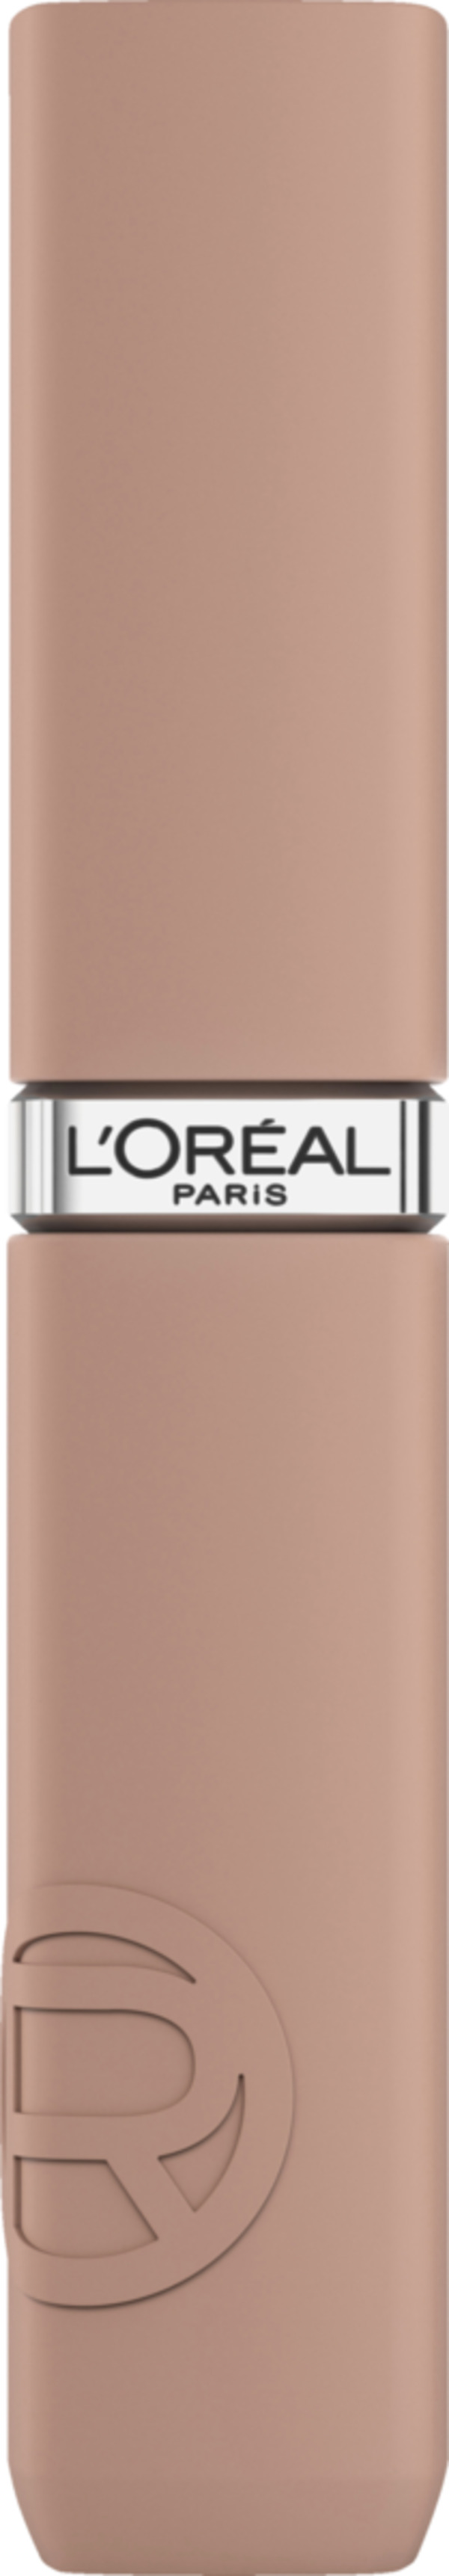 Bild 1 von L’Oréal Paris Infaillible Matte Resistance 16H Lippenstift 105 Breakfast in Bed